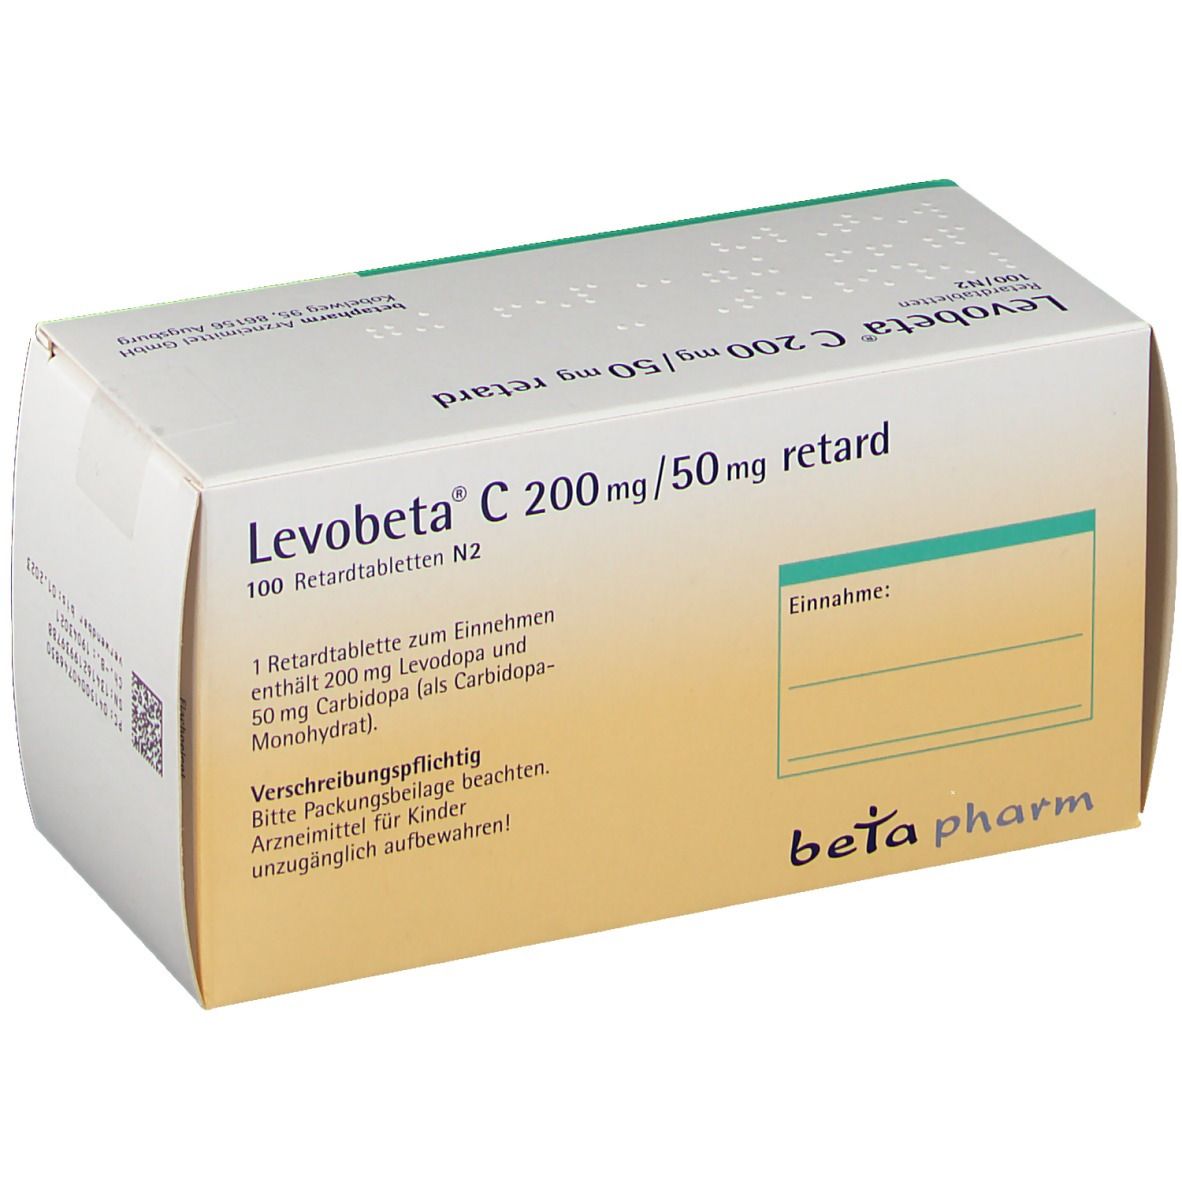 Levobeta® C 200 mg/50 mg retard